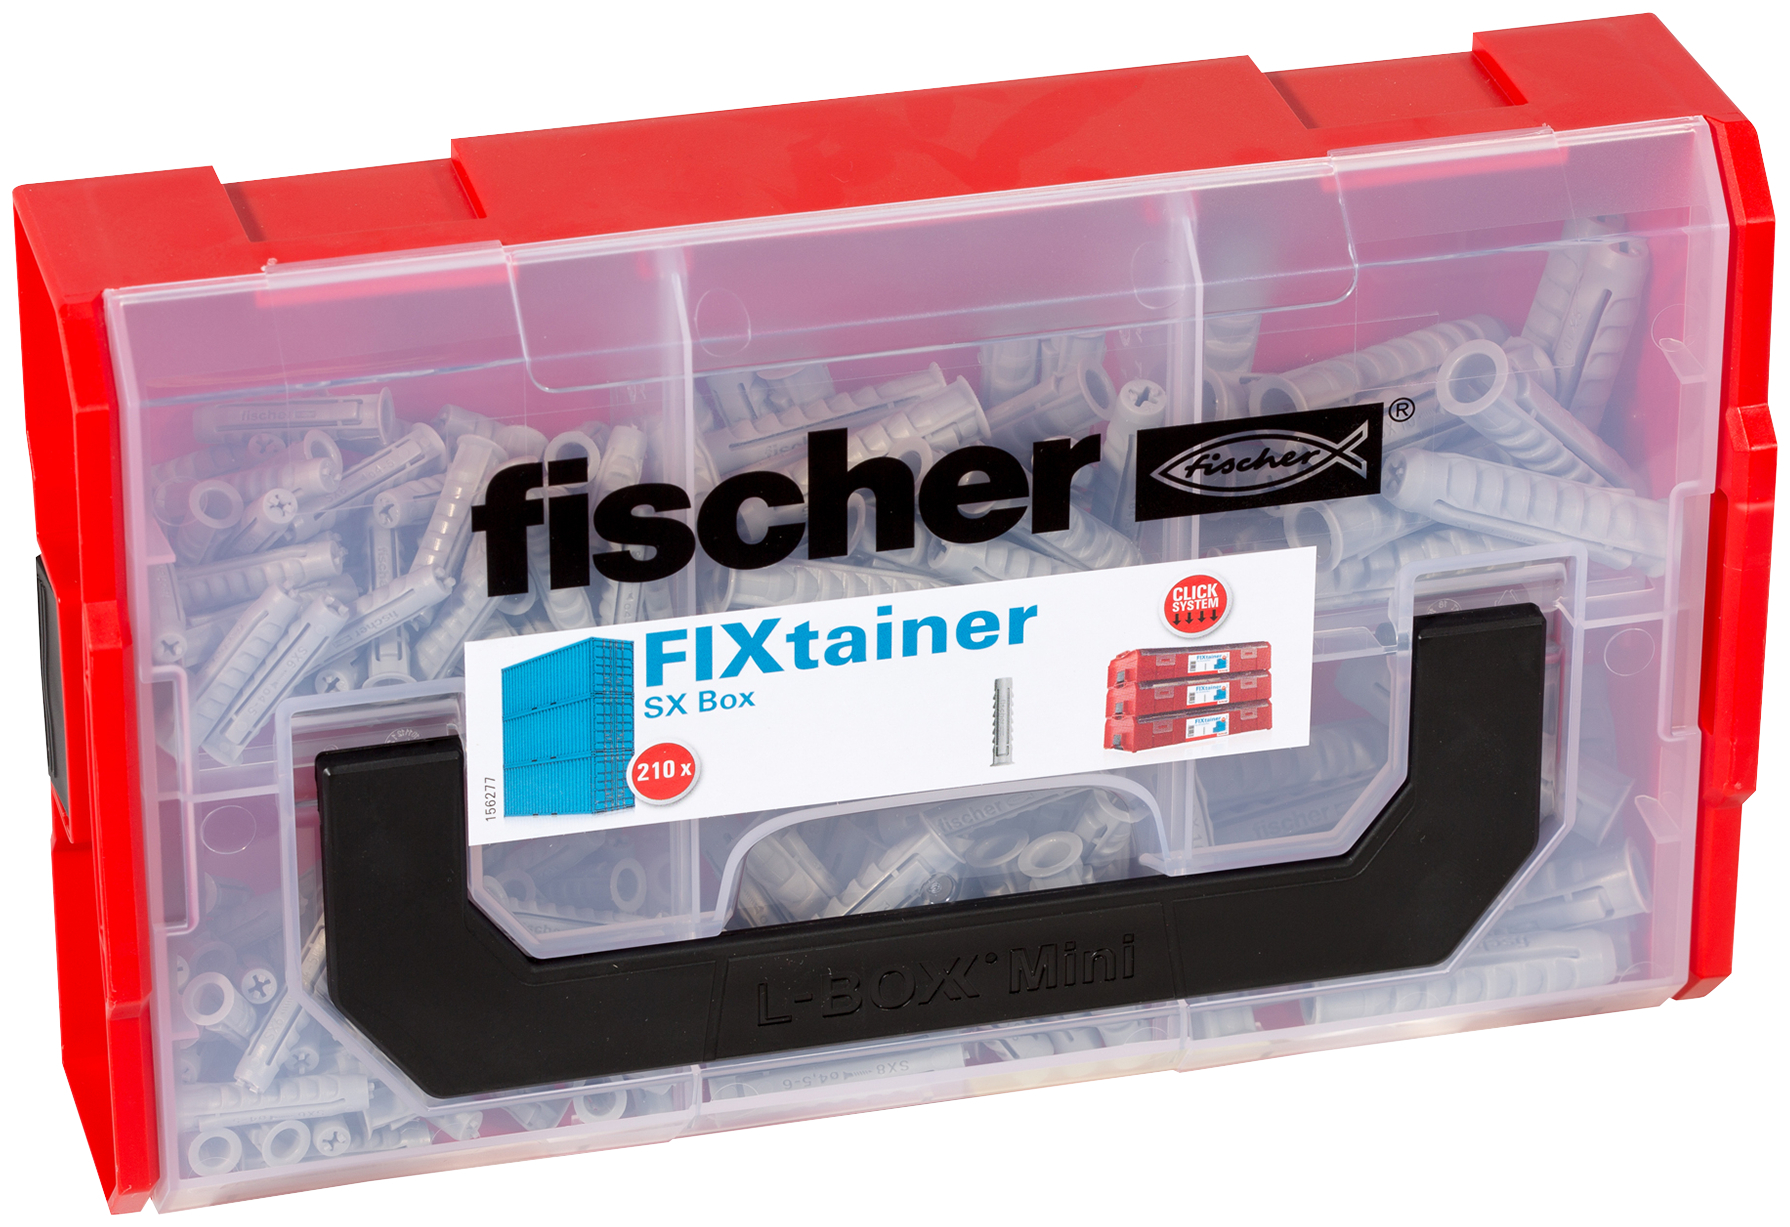 fischer FIXtainer SX Valigetta tasselli (210 Pz.) Pratiche soluzioni di fissaggio per le pi comuni applicazioni nel fischer FixTainer impilabile e di alta qualit fie2750